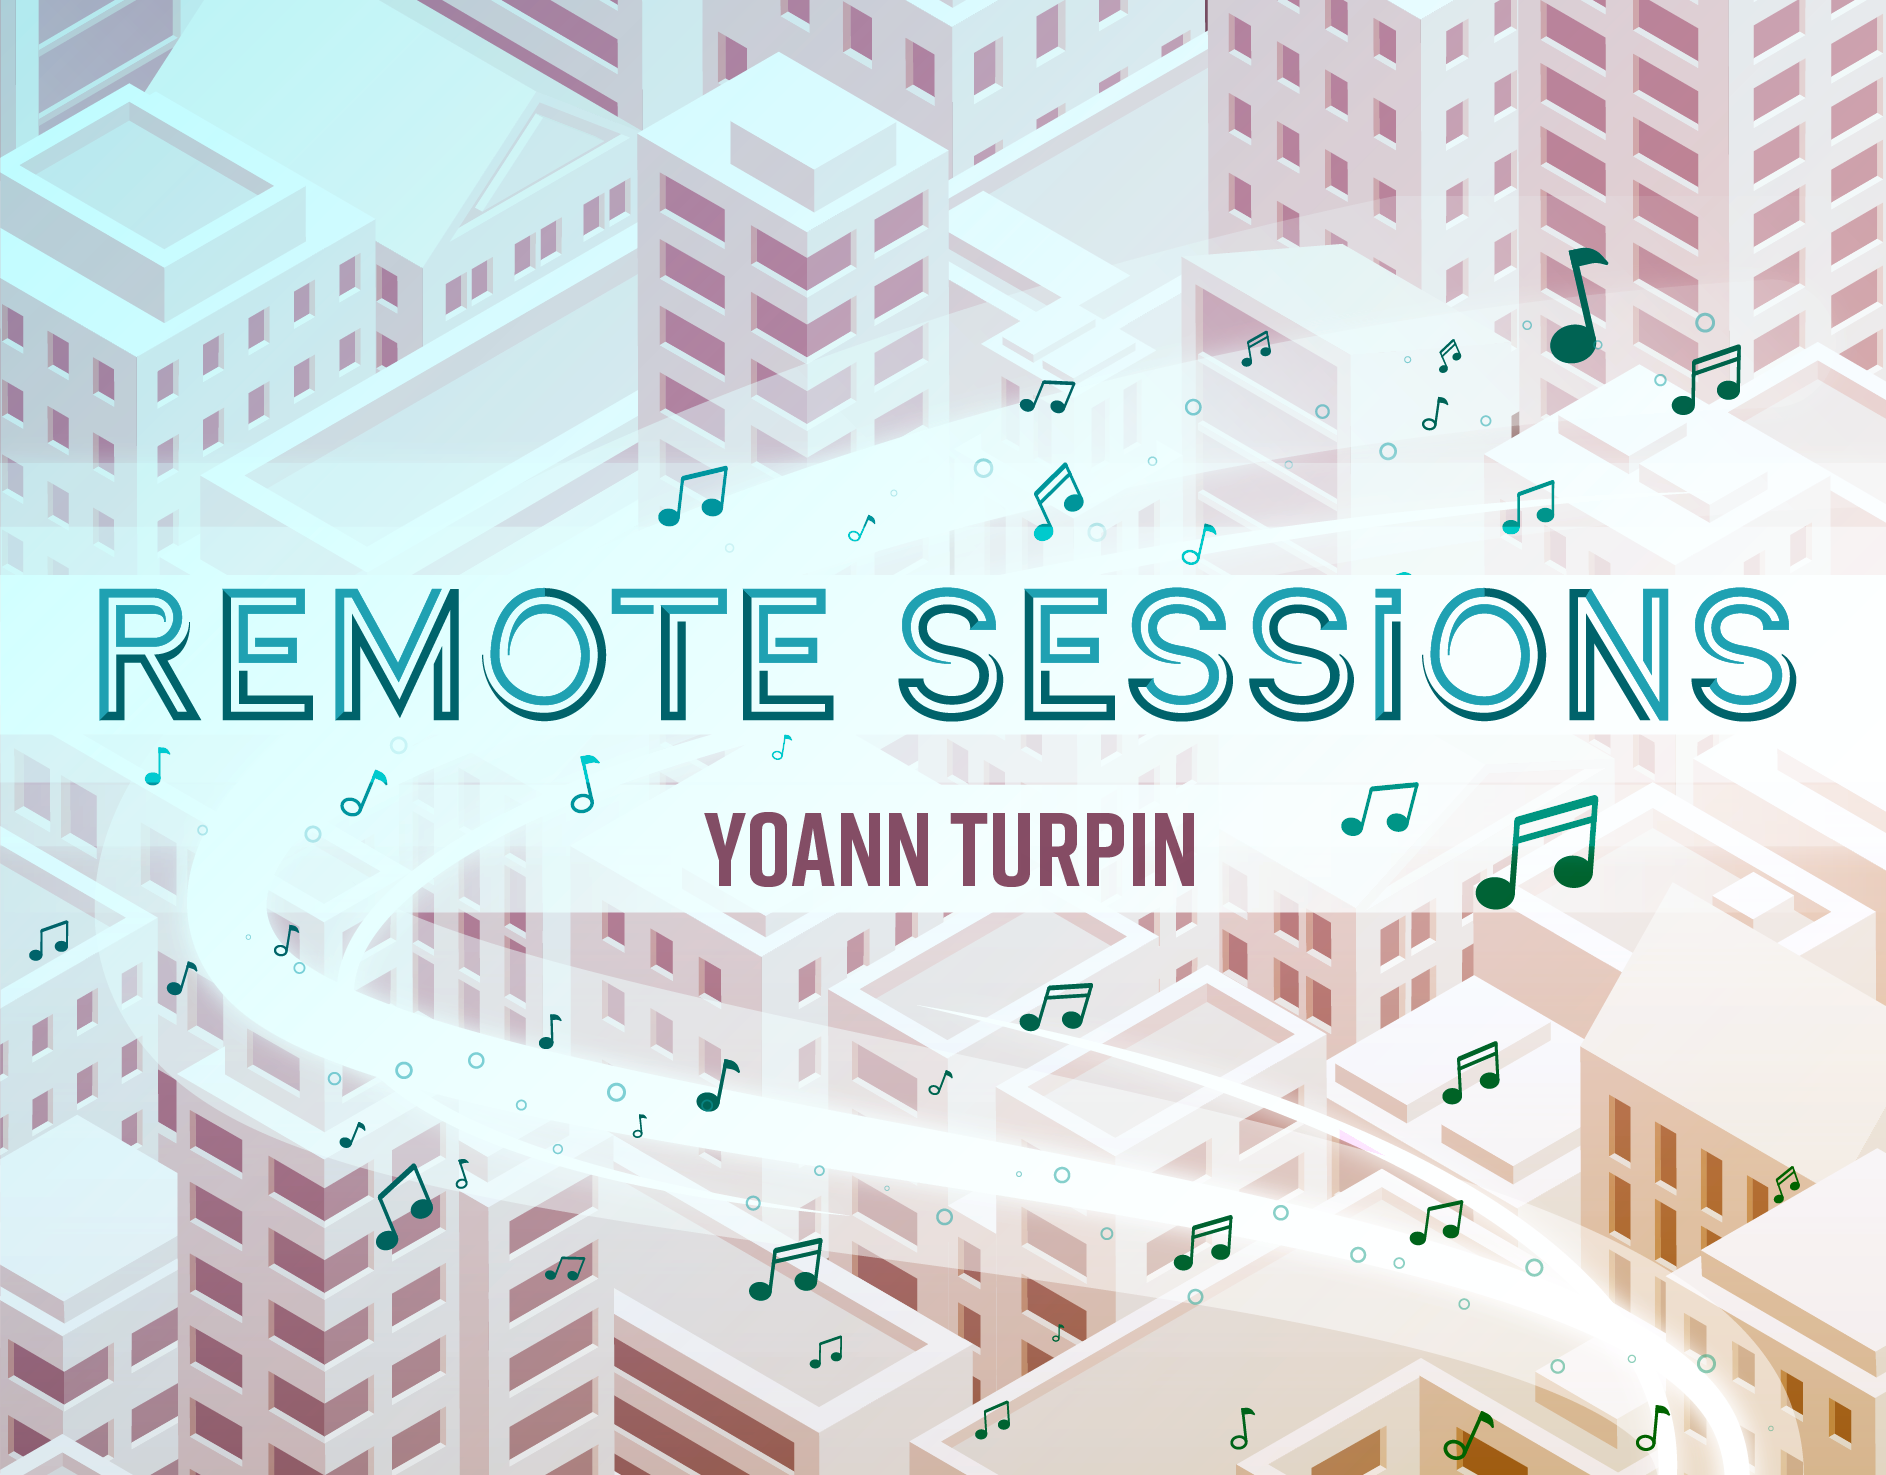 Remote Sessions | Yoann Turpin. April 2020